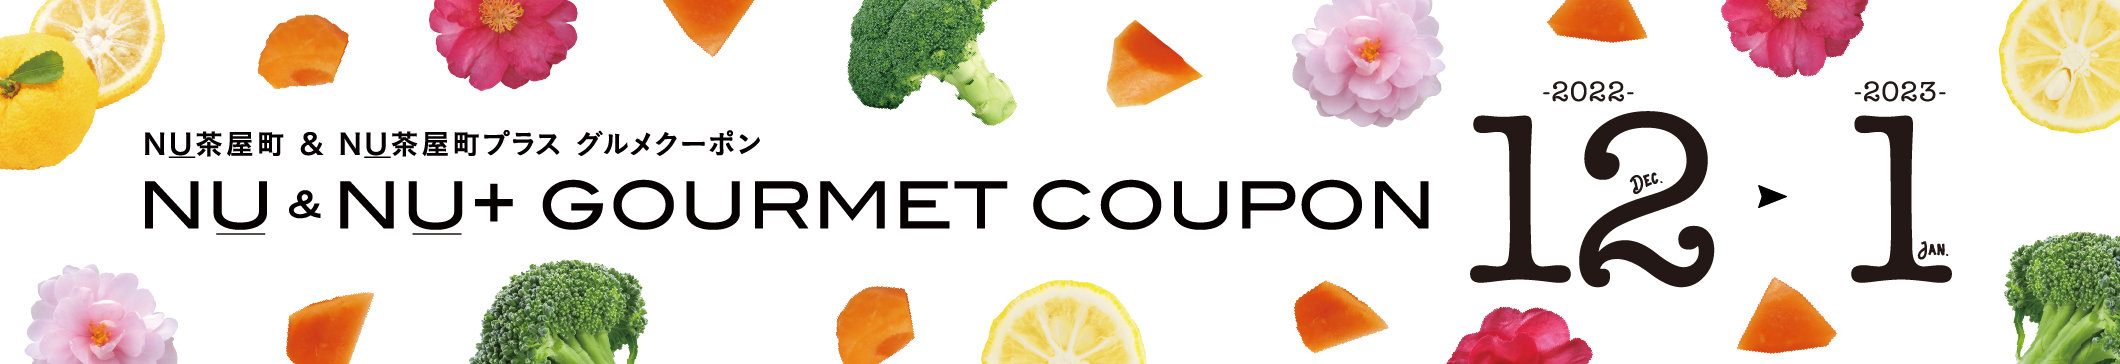 gourmet_coupon_12月1月